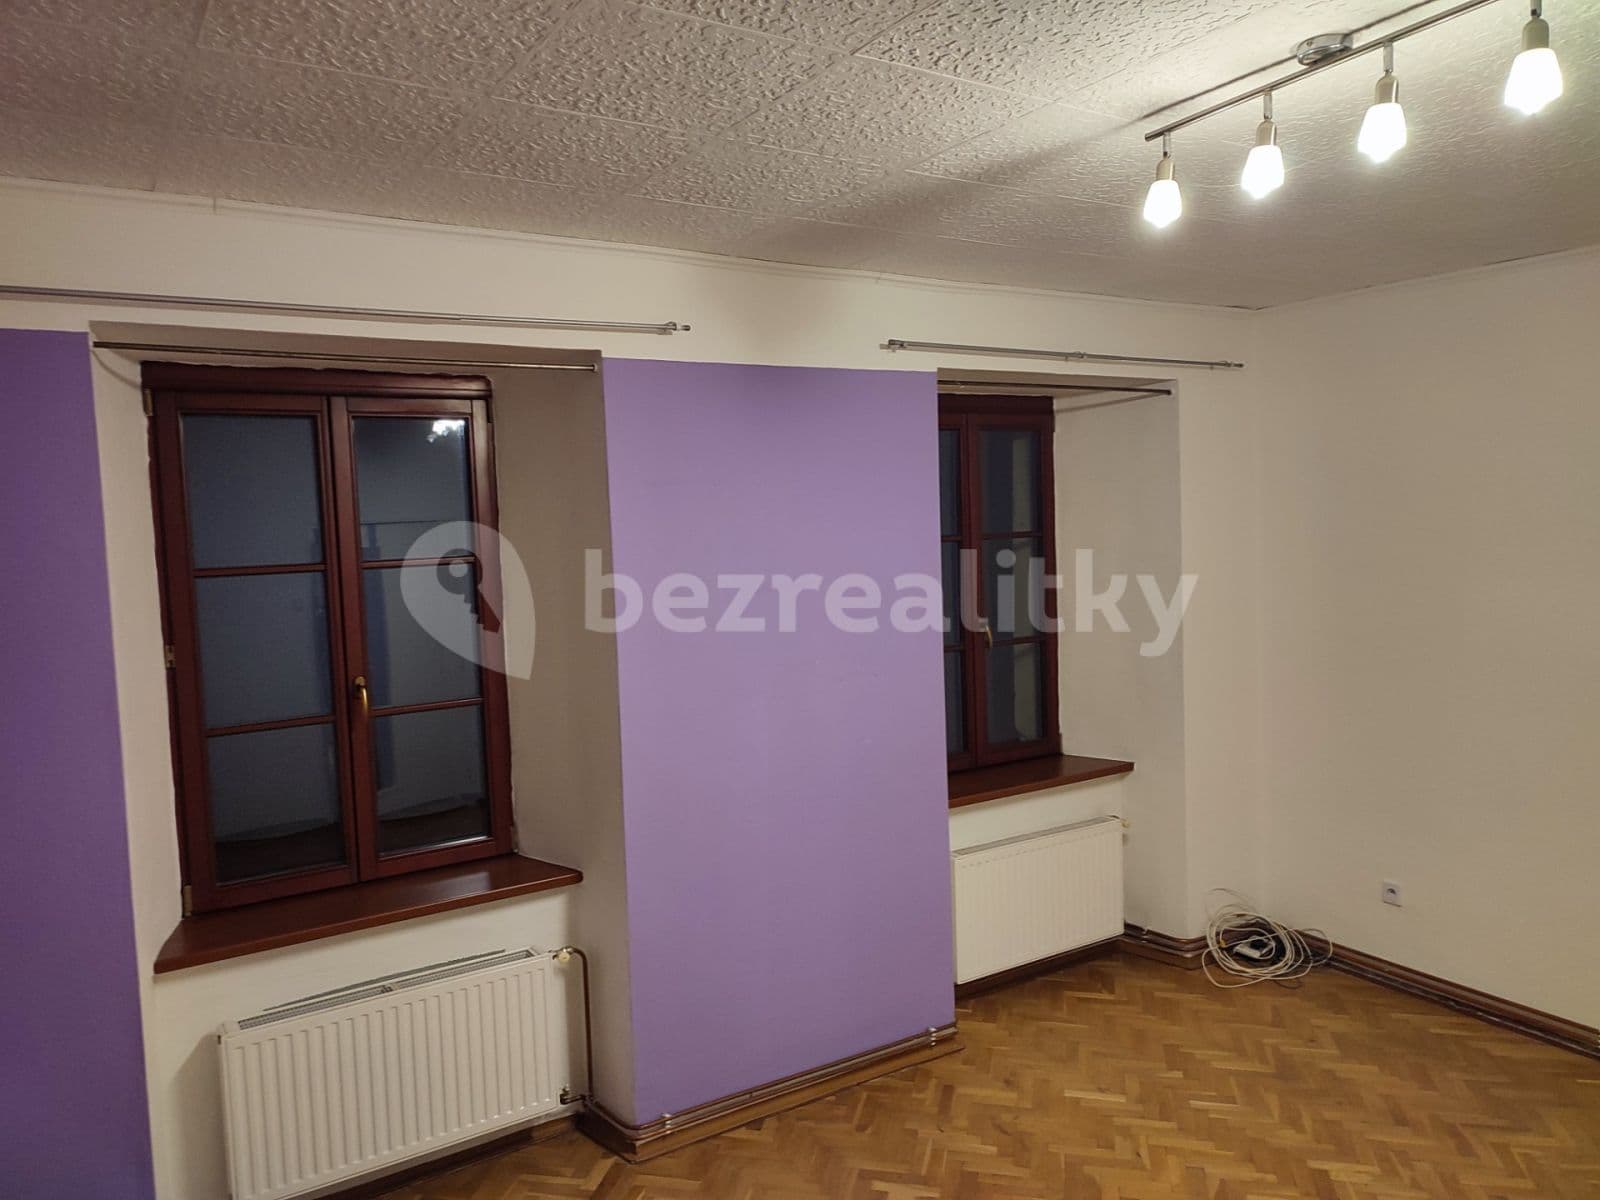 2 bedroom flat to rent, 70 m², Zámek, Náměšť nad Oslavou, Vysočina Region